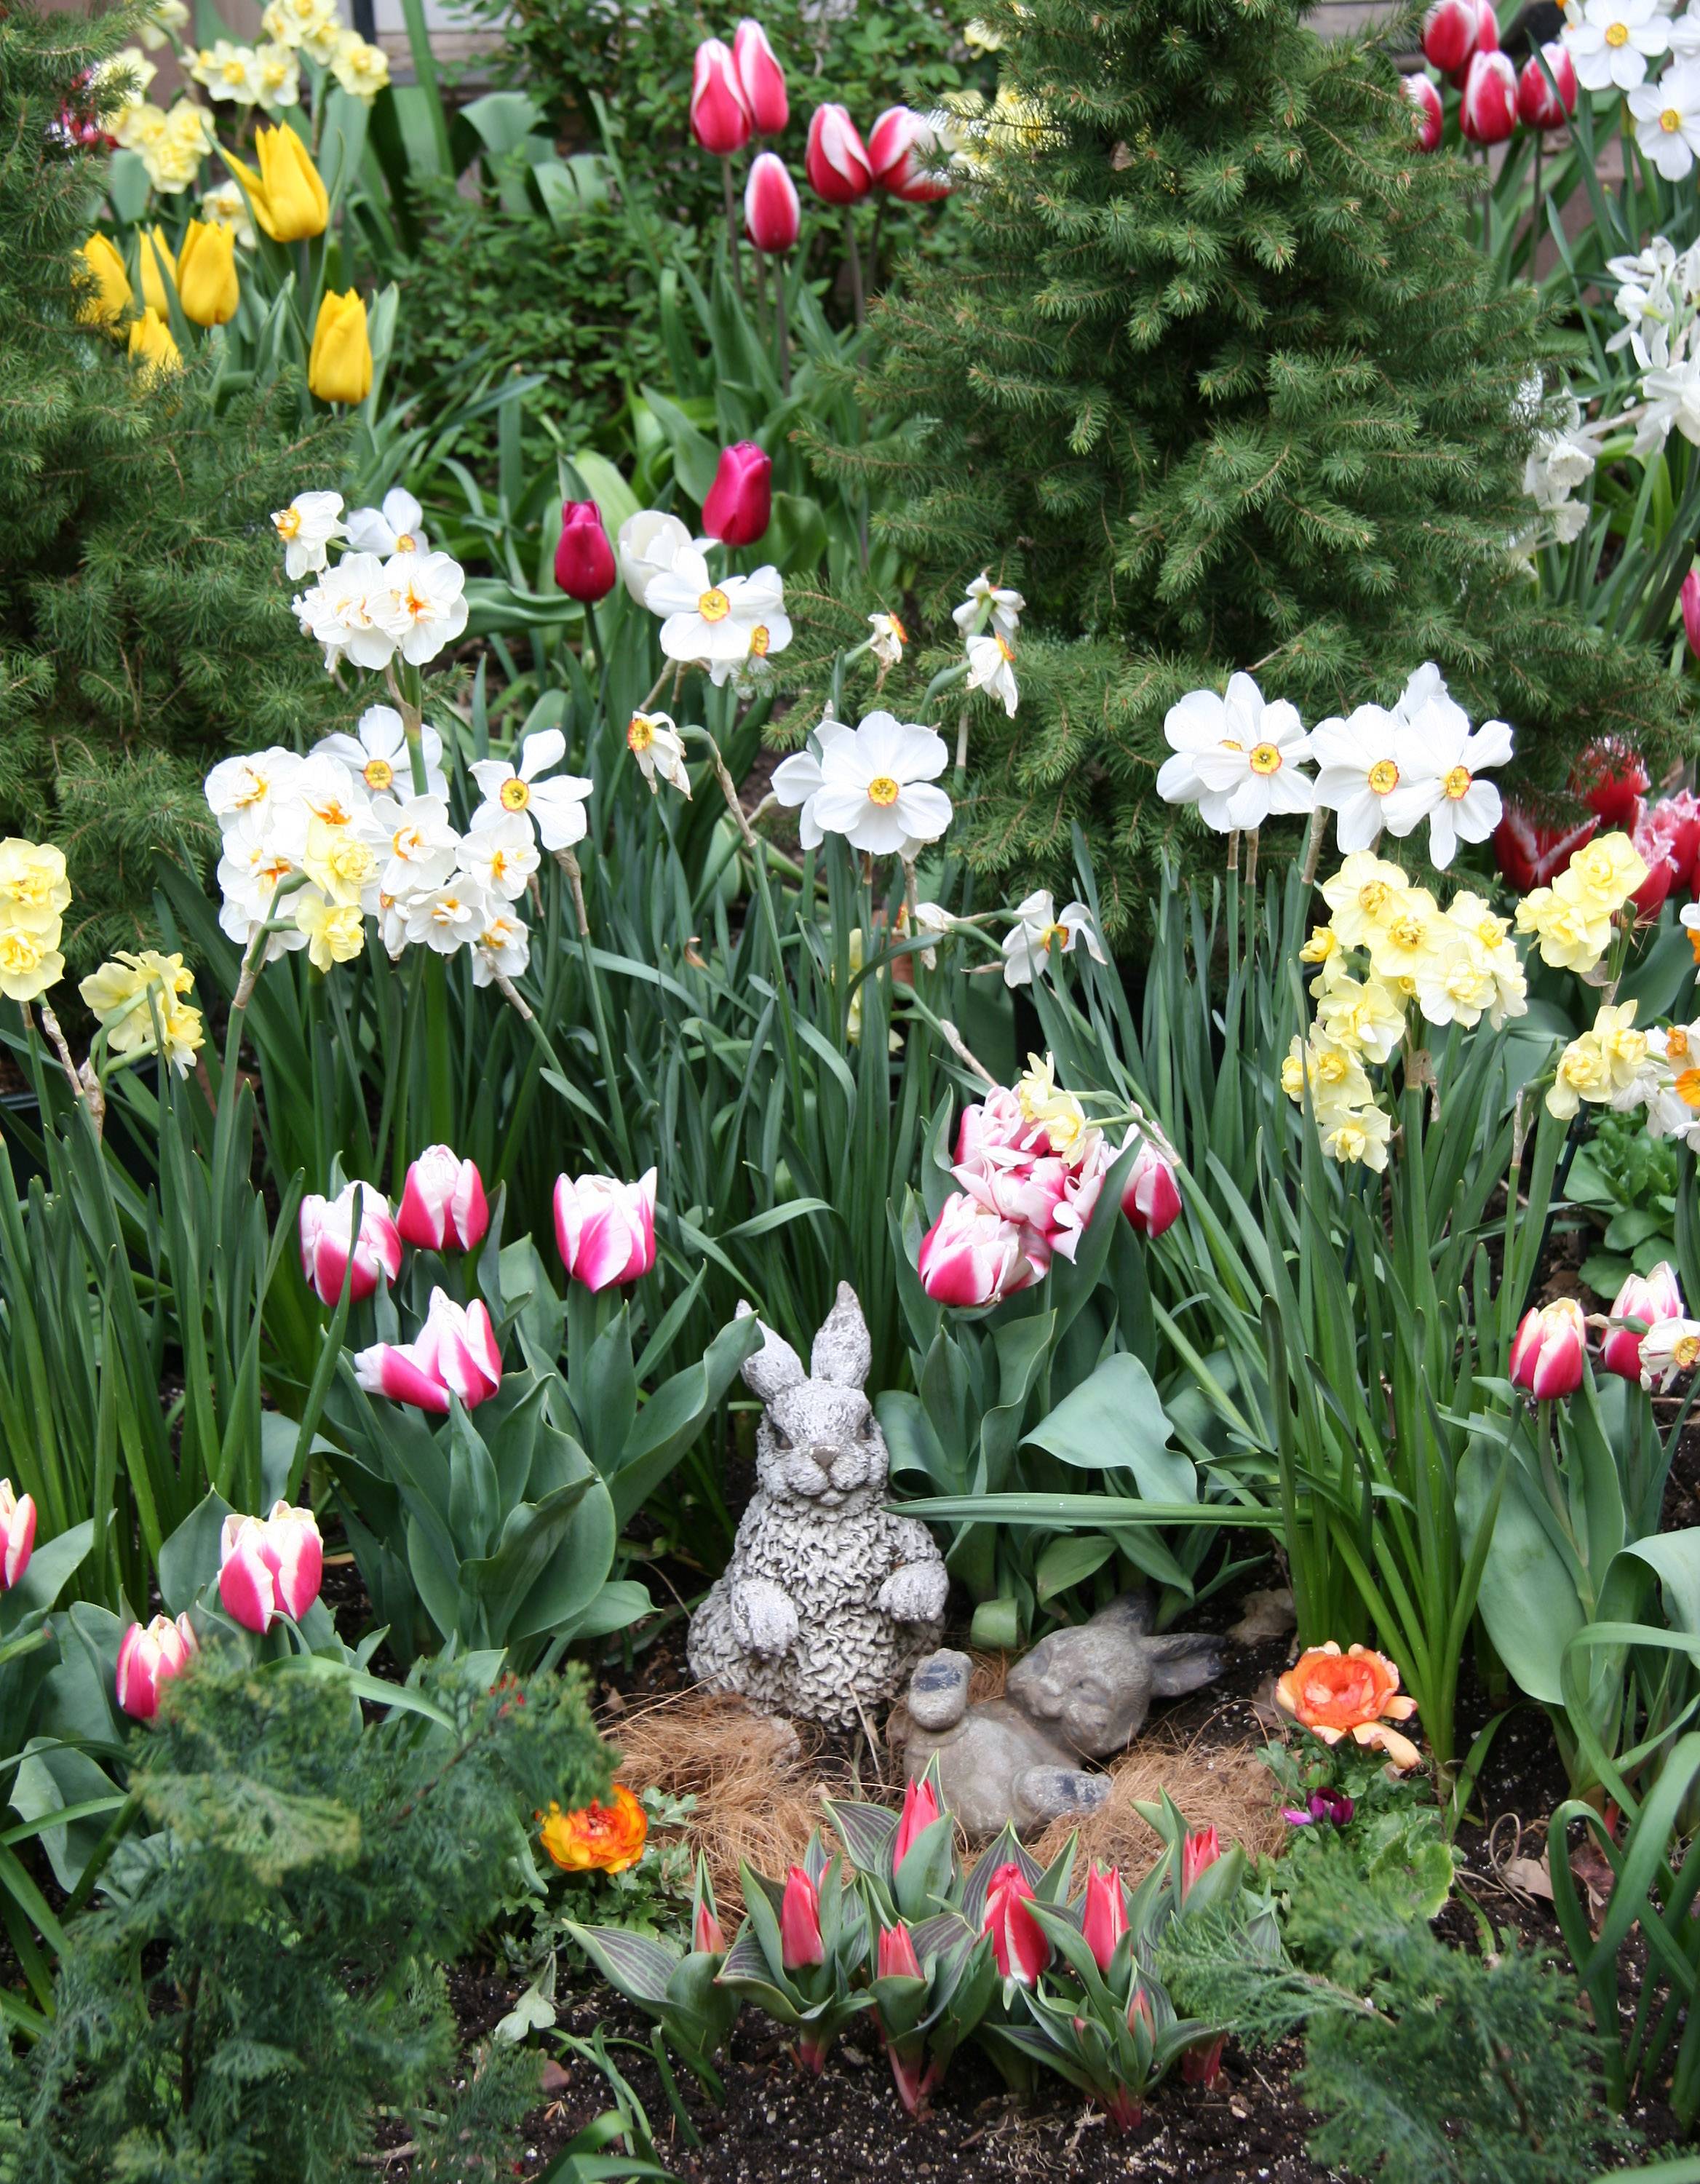 Peter Rabbit & Baby Rabbit in a Spring Flower Garden